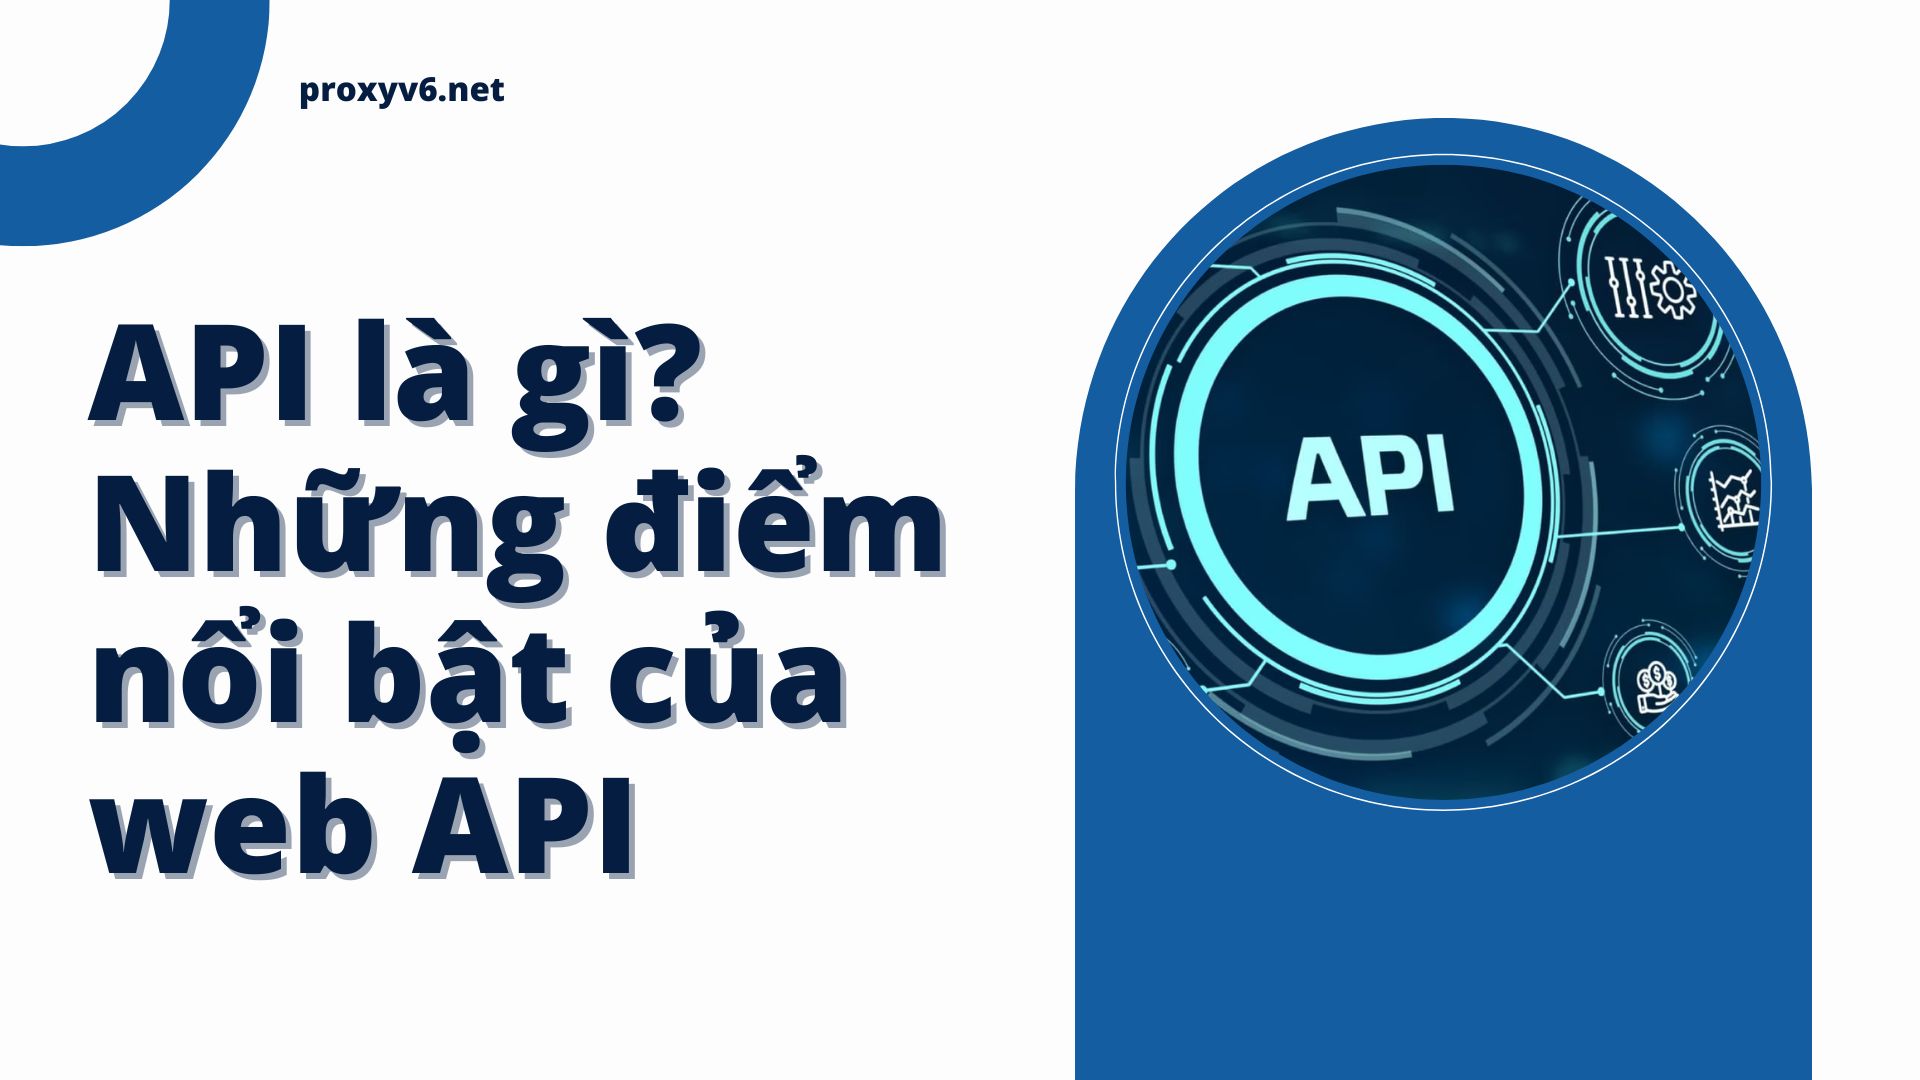 API là gì? Những điểm nổi bật của web API